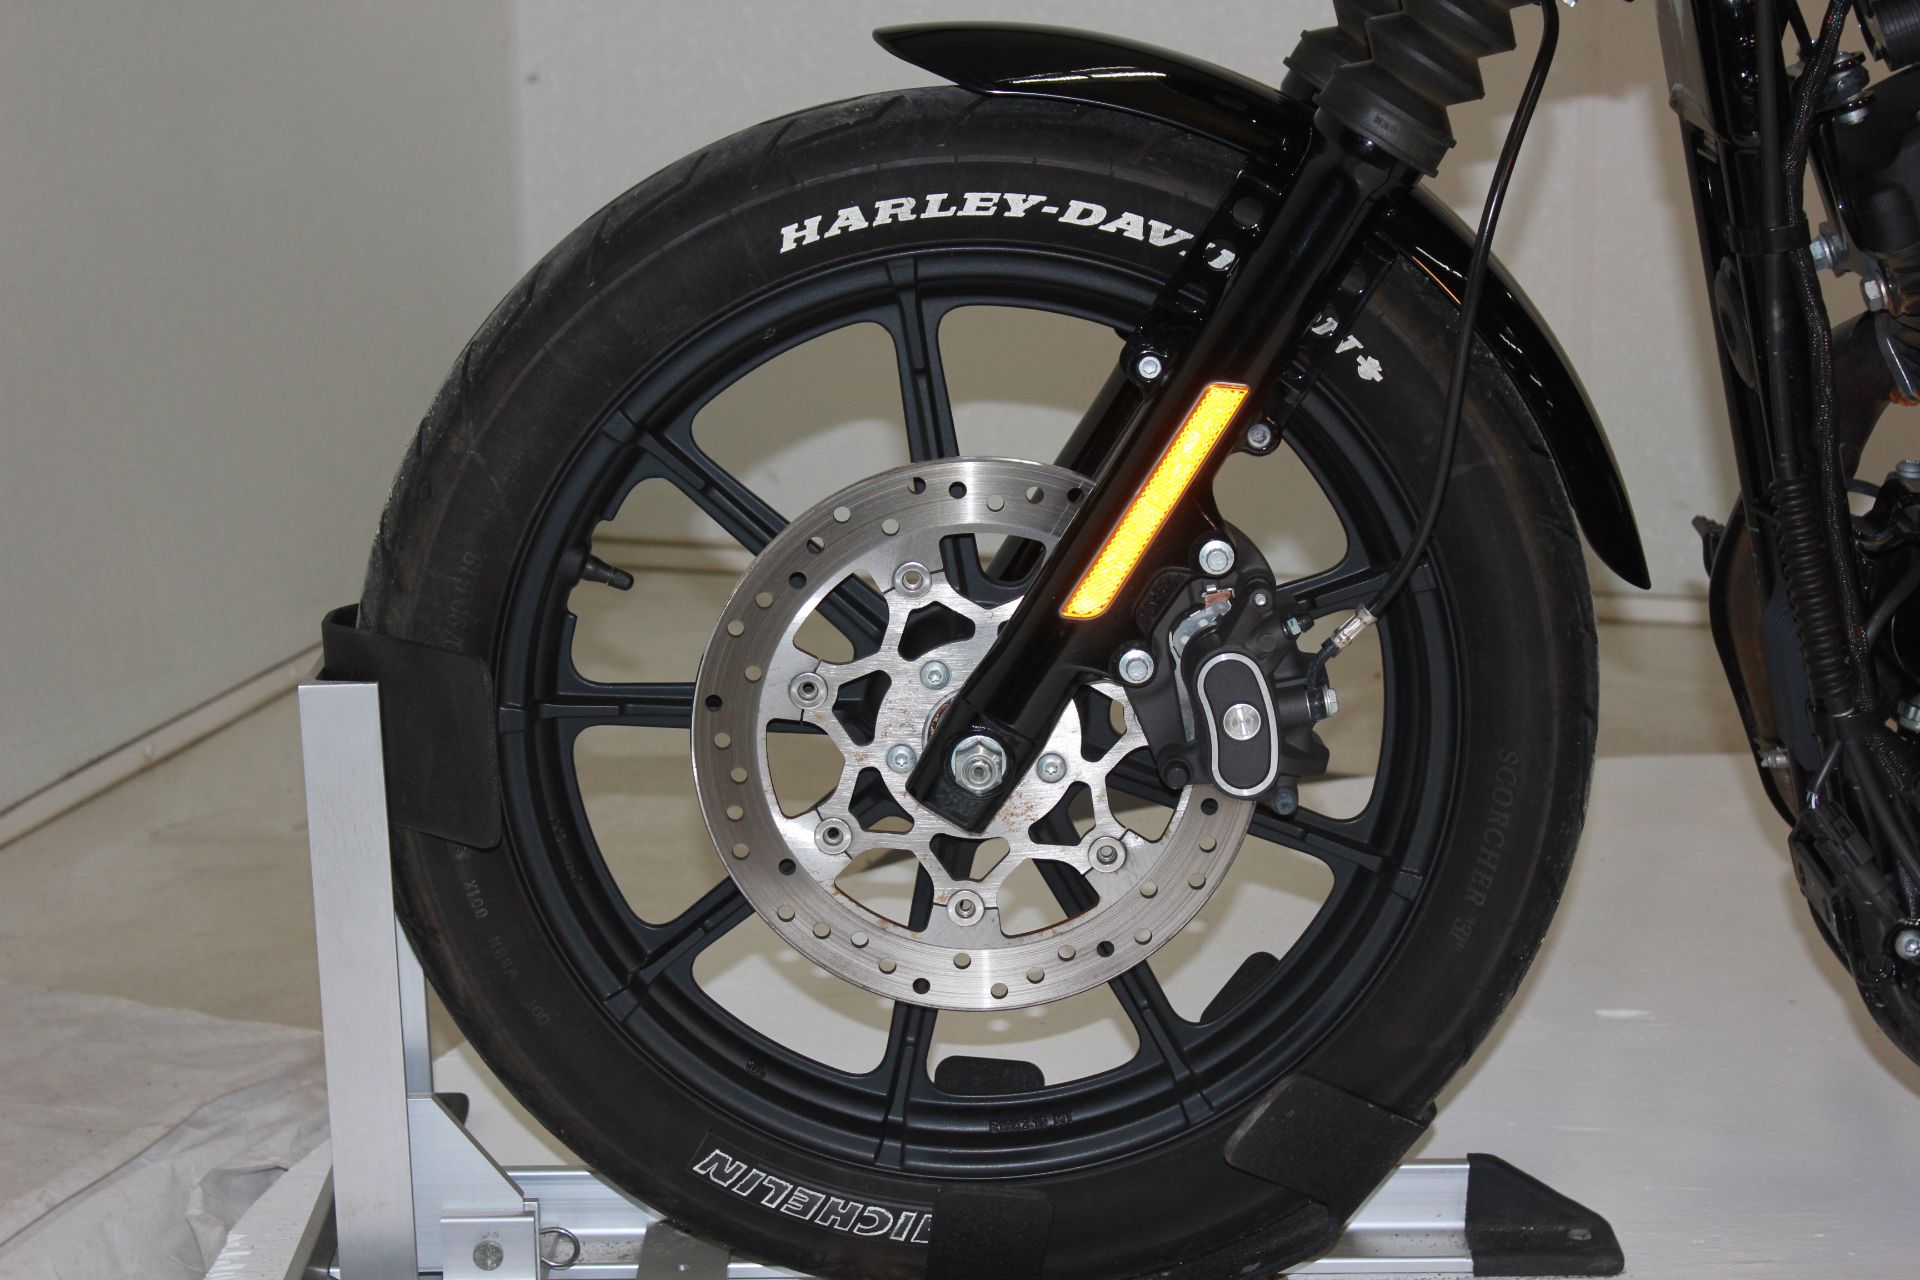 2021 Harley-Davidson Iron 1200™ in Pittsfield, Massachusetts - Photo 15